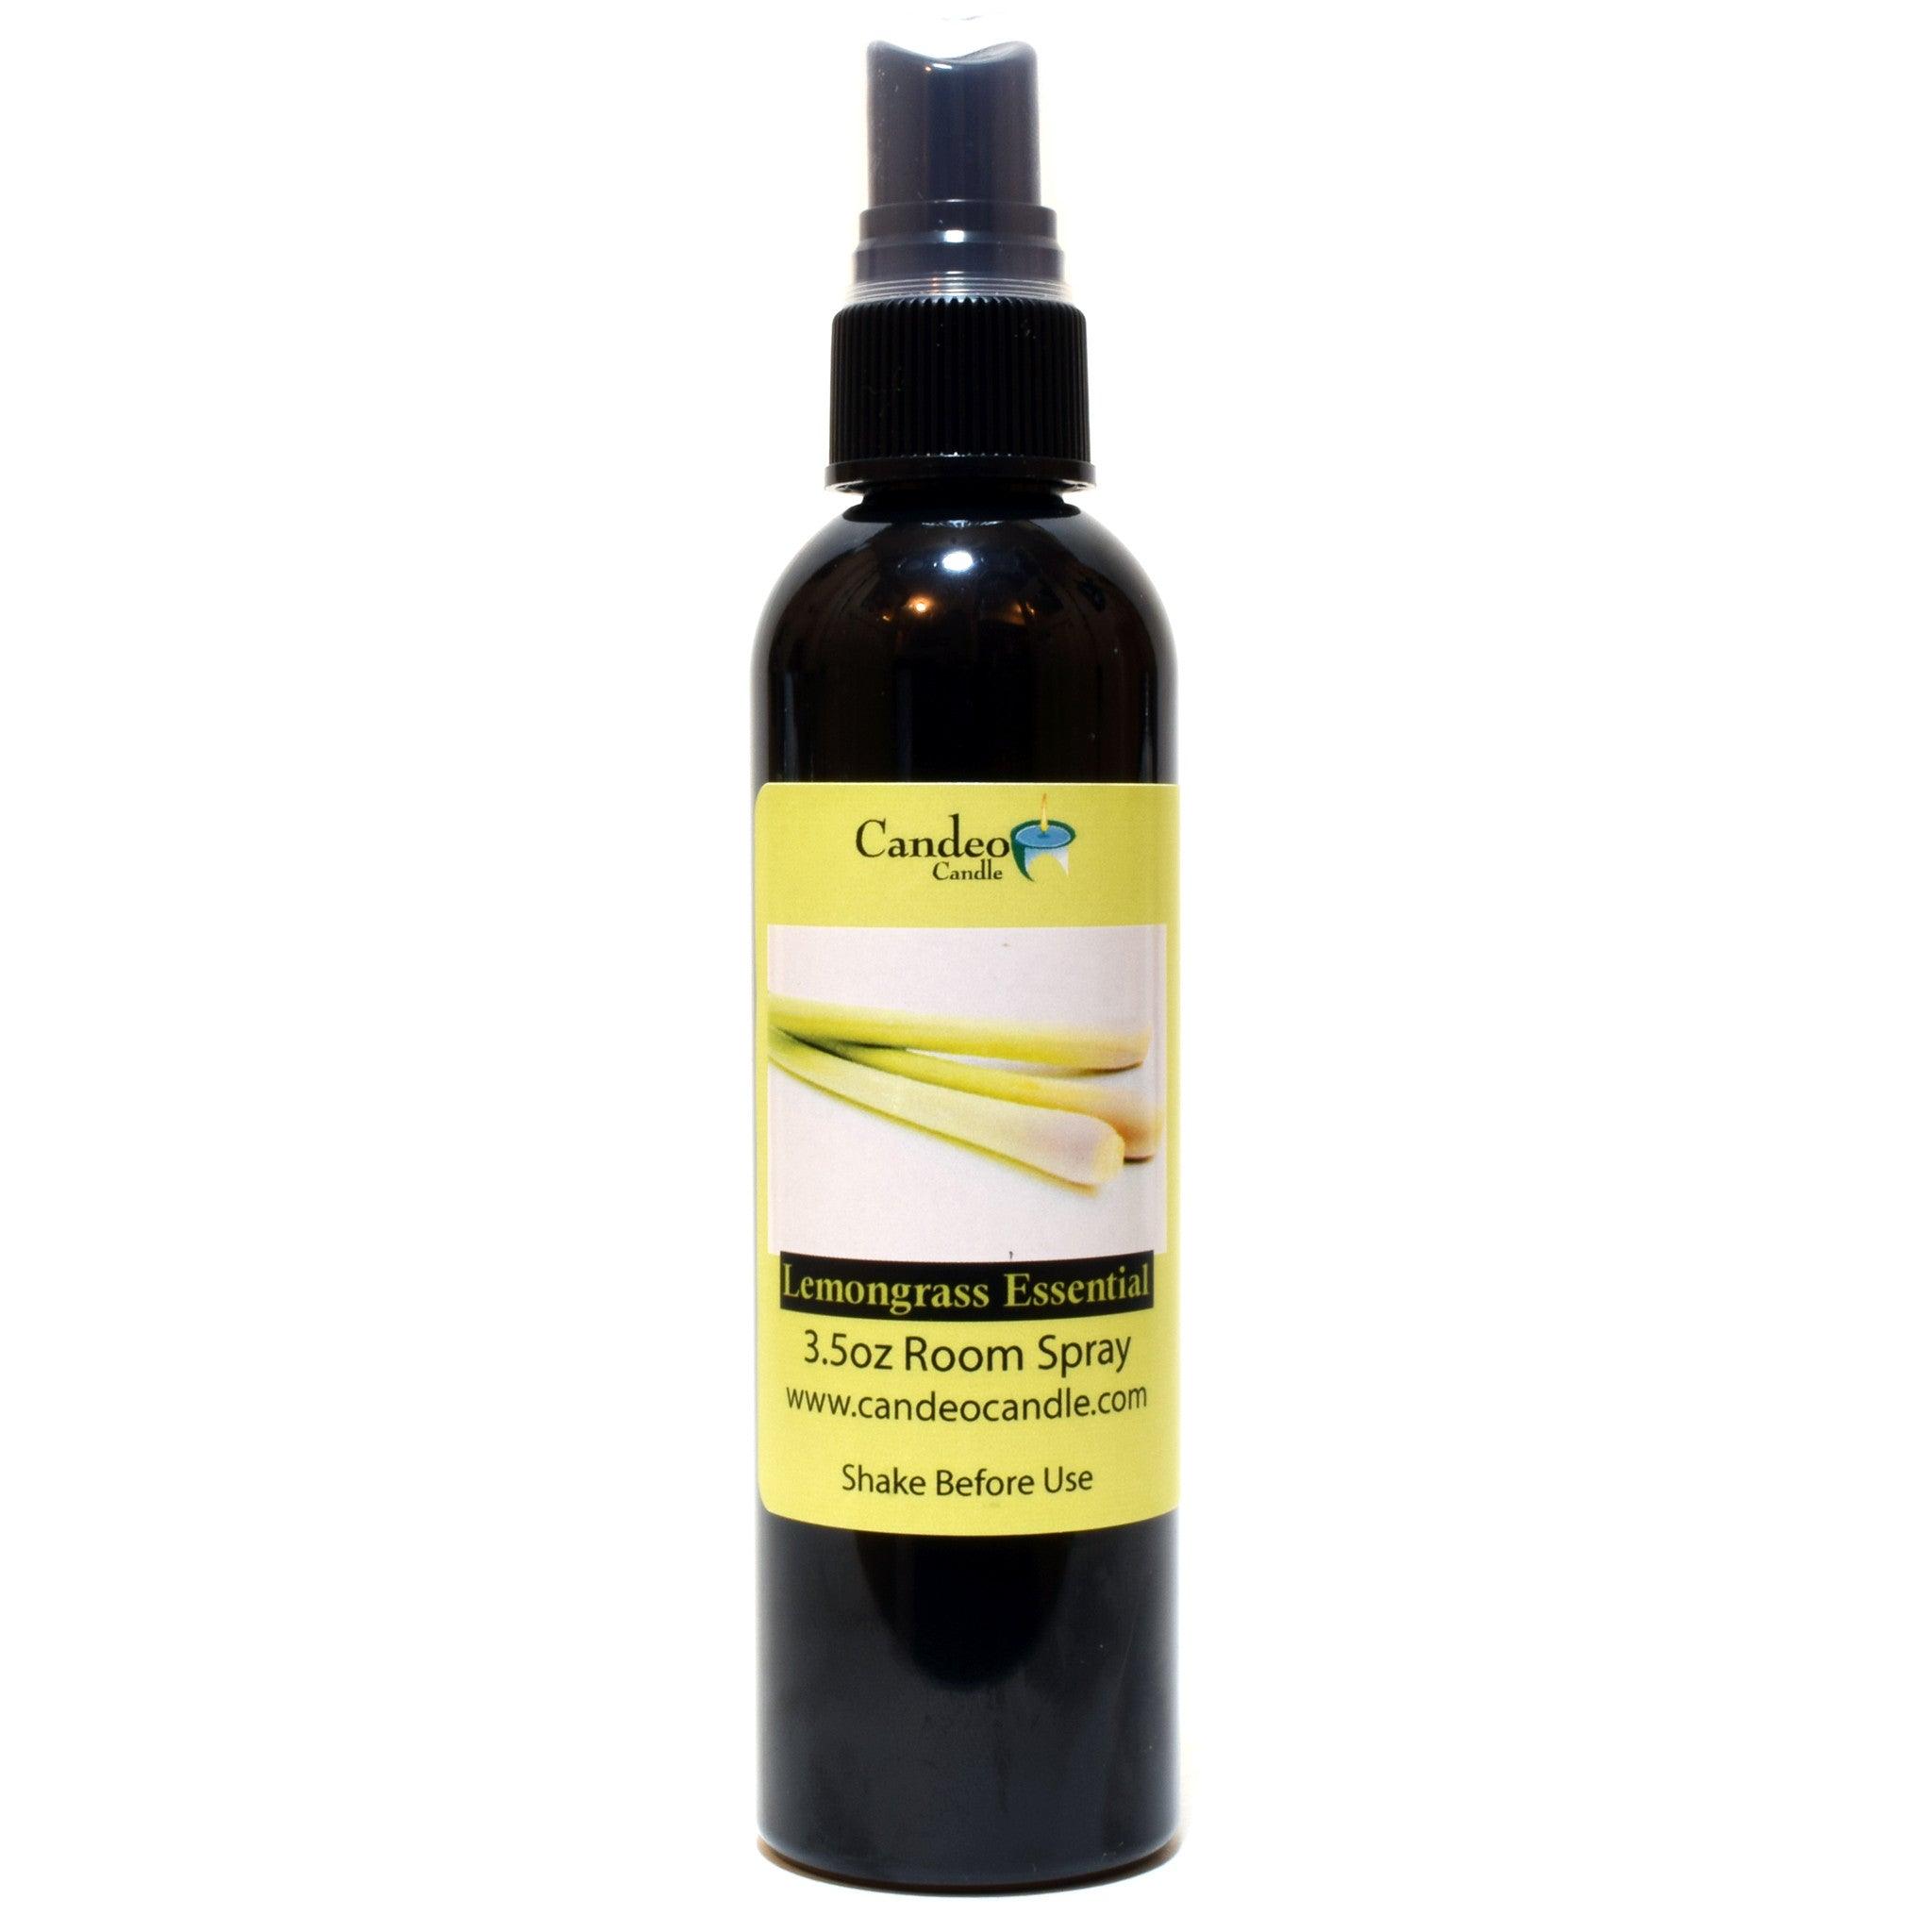 Lemongrass Essential Oil, 3.5 oz Room Spray - Candeo Candle